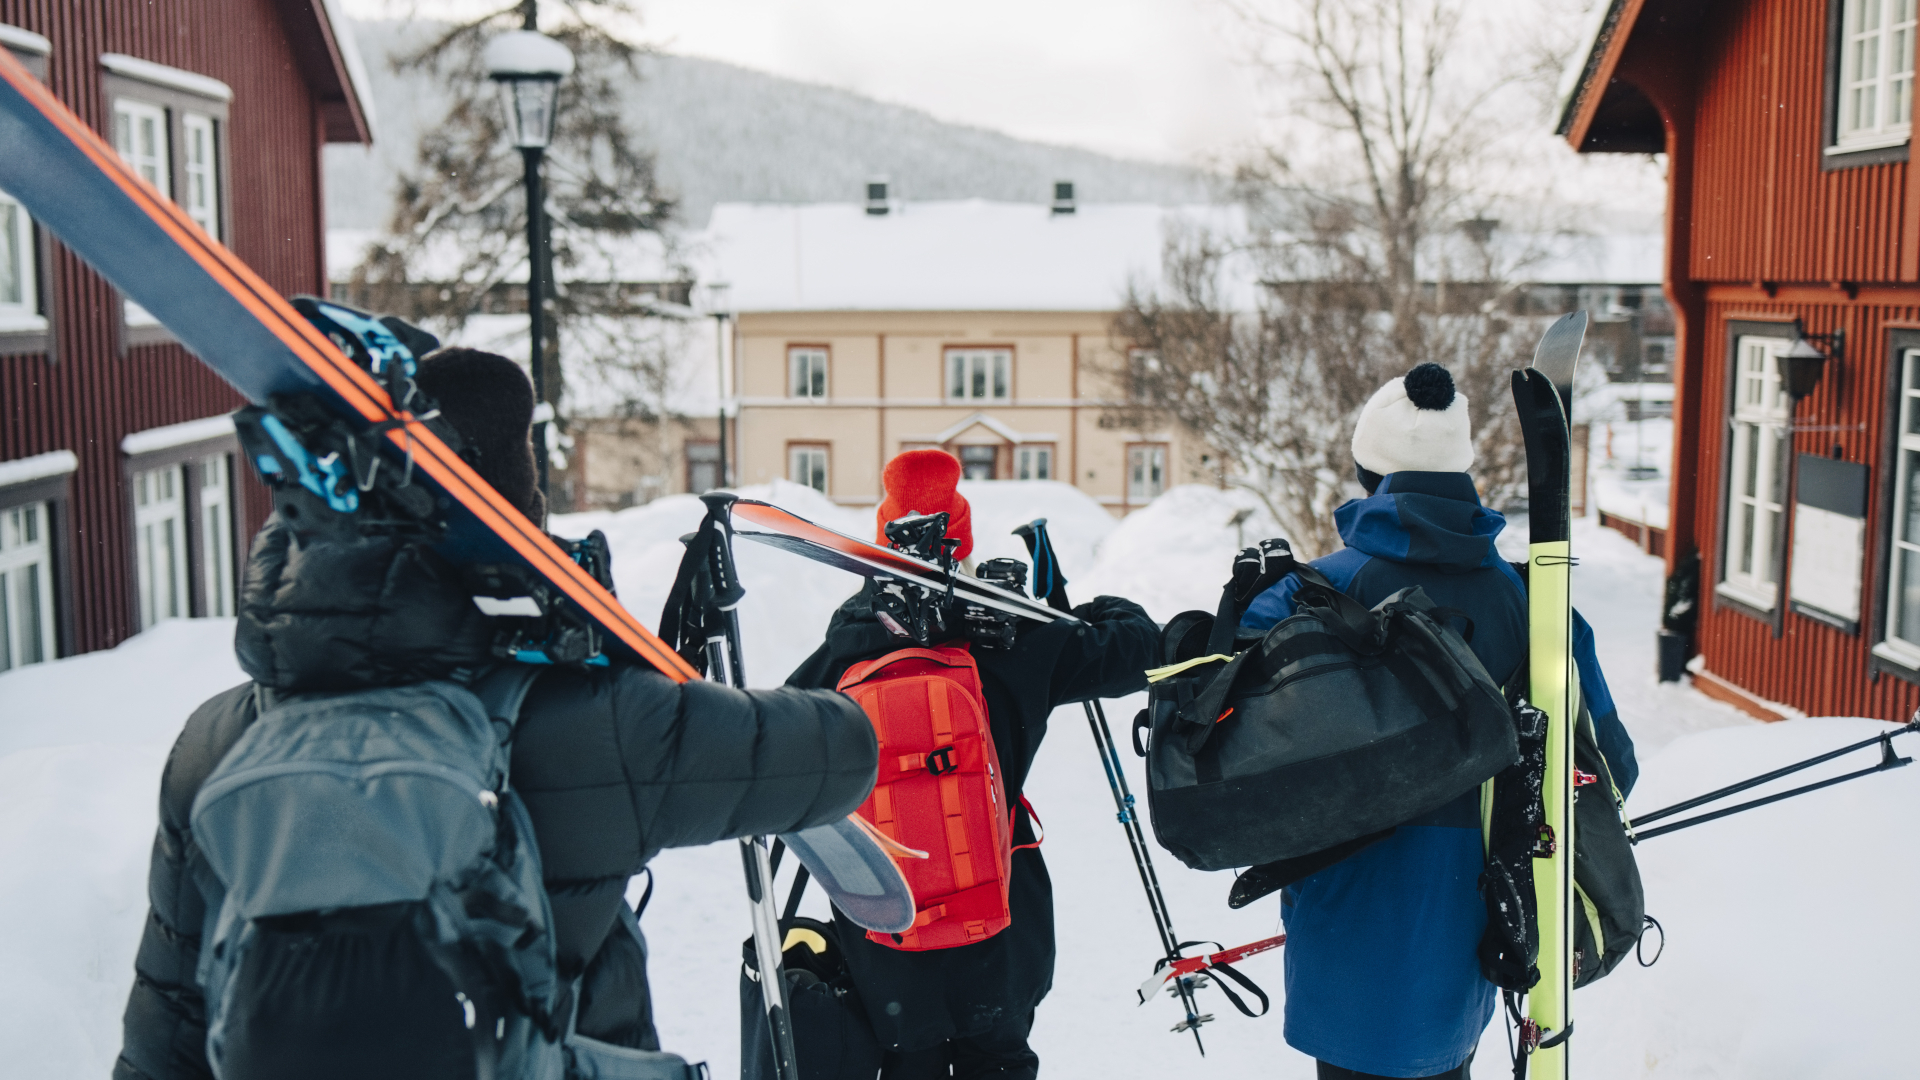 Tres esquiadores paseando por un resort con los esquís al hombro